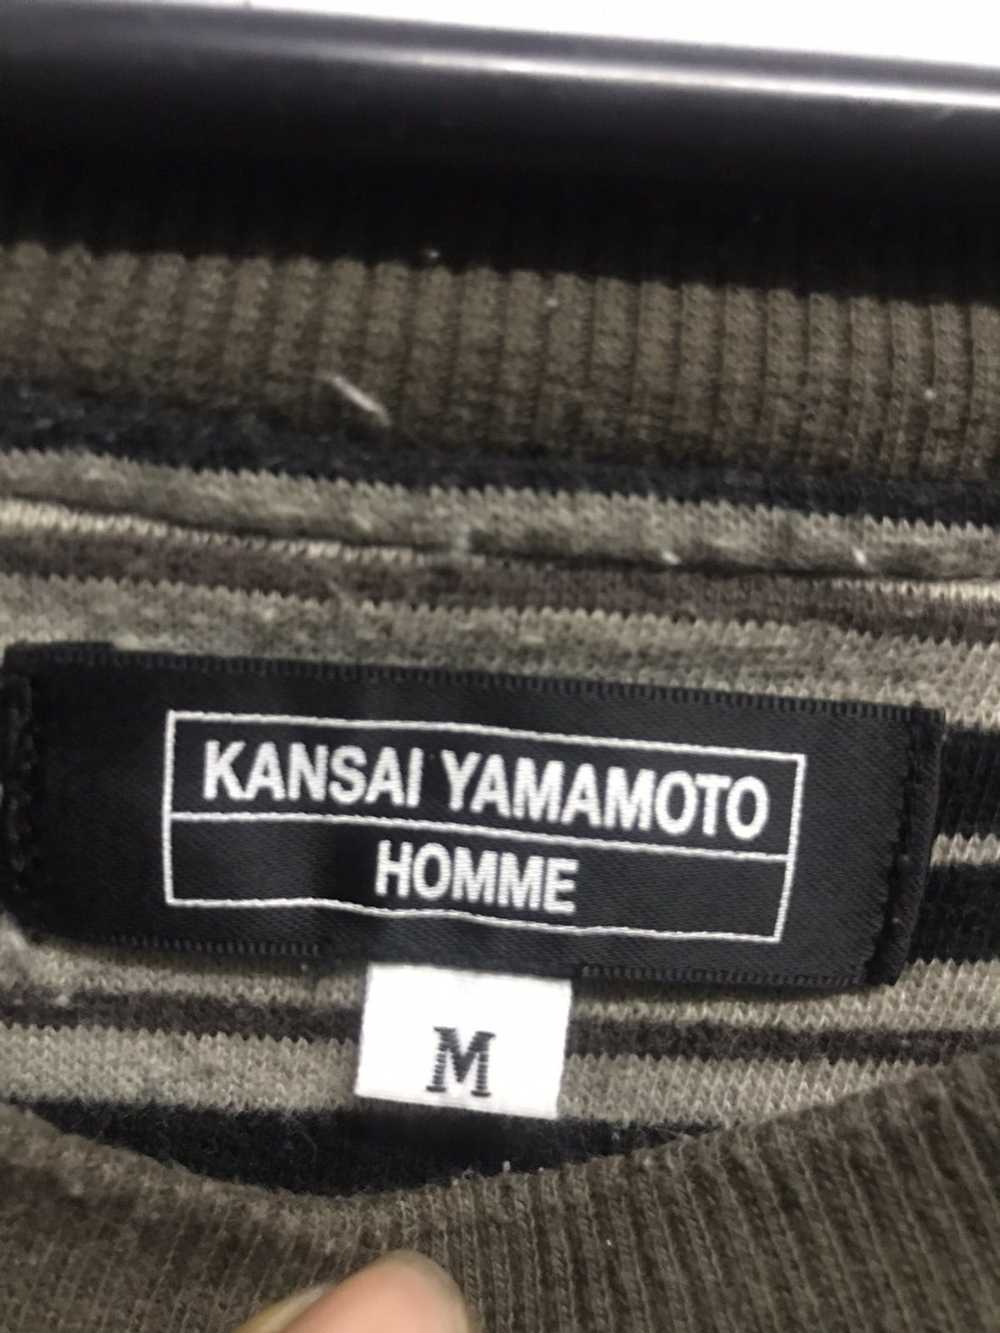 Kansai Yamamoto Kansai Yamamoto stripes sweatshirt - image 3